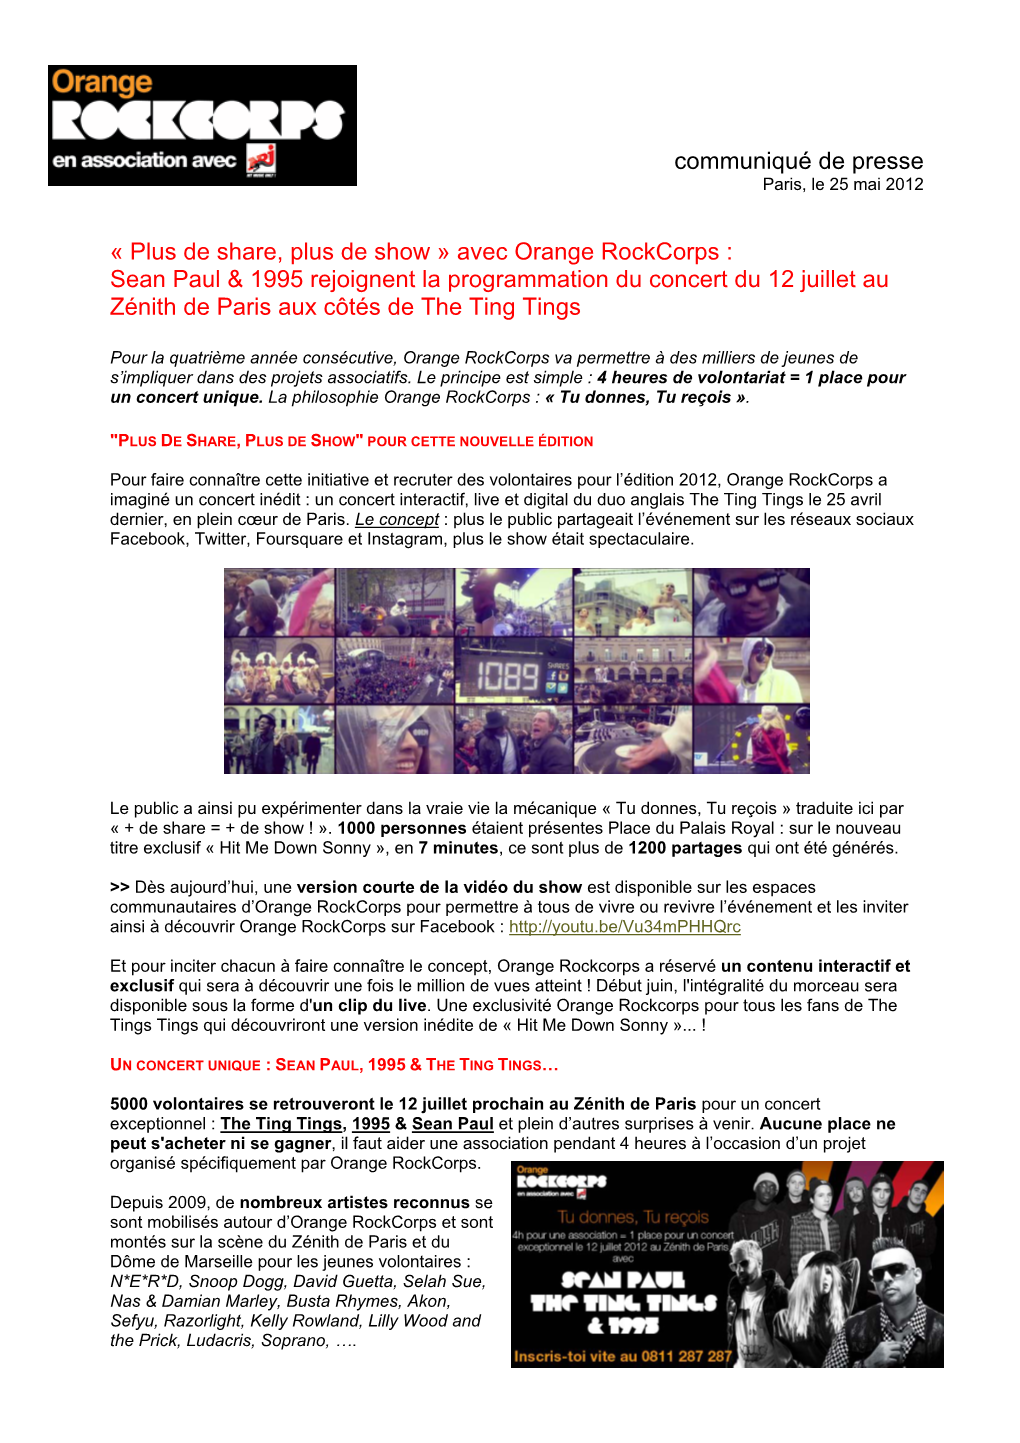 Avec Orange Rockcorps : Sean Paul & 1995 Rejoignent La Programmation Du Concert Du 12 Juillet Au Zénith De Paris Aux Côtés De the Ting Tings